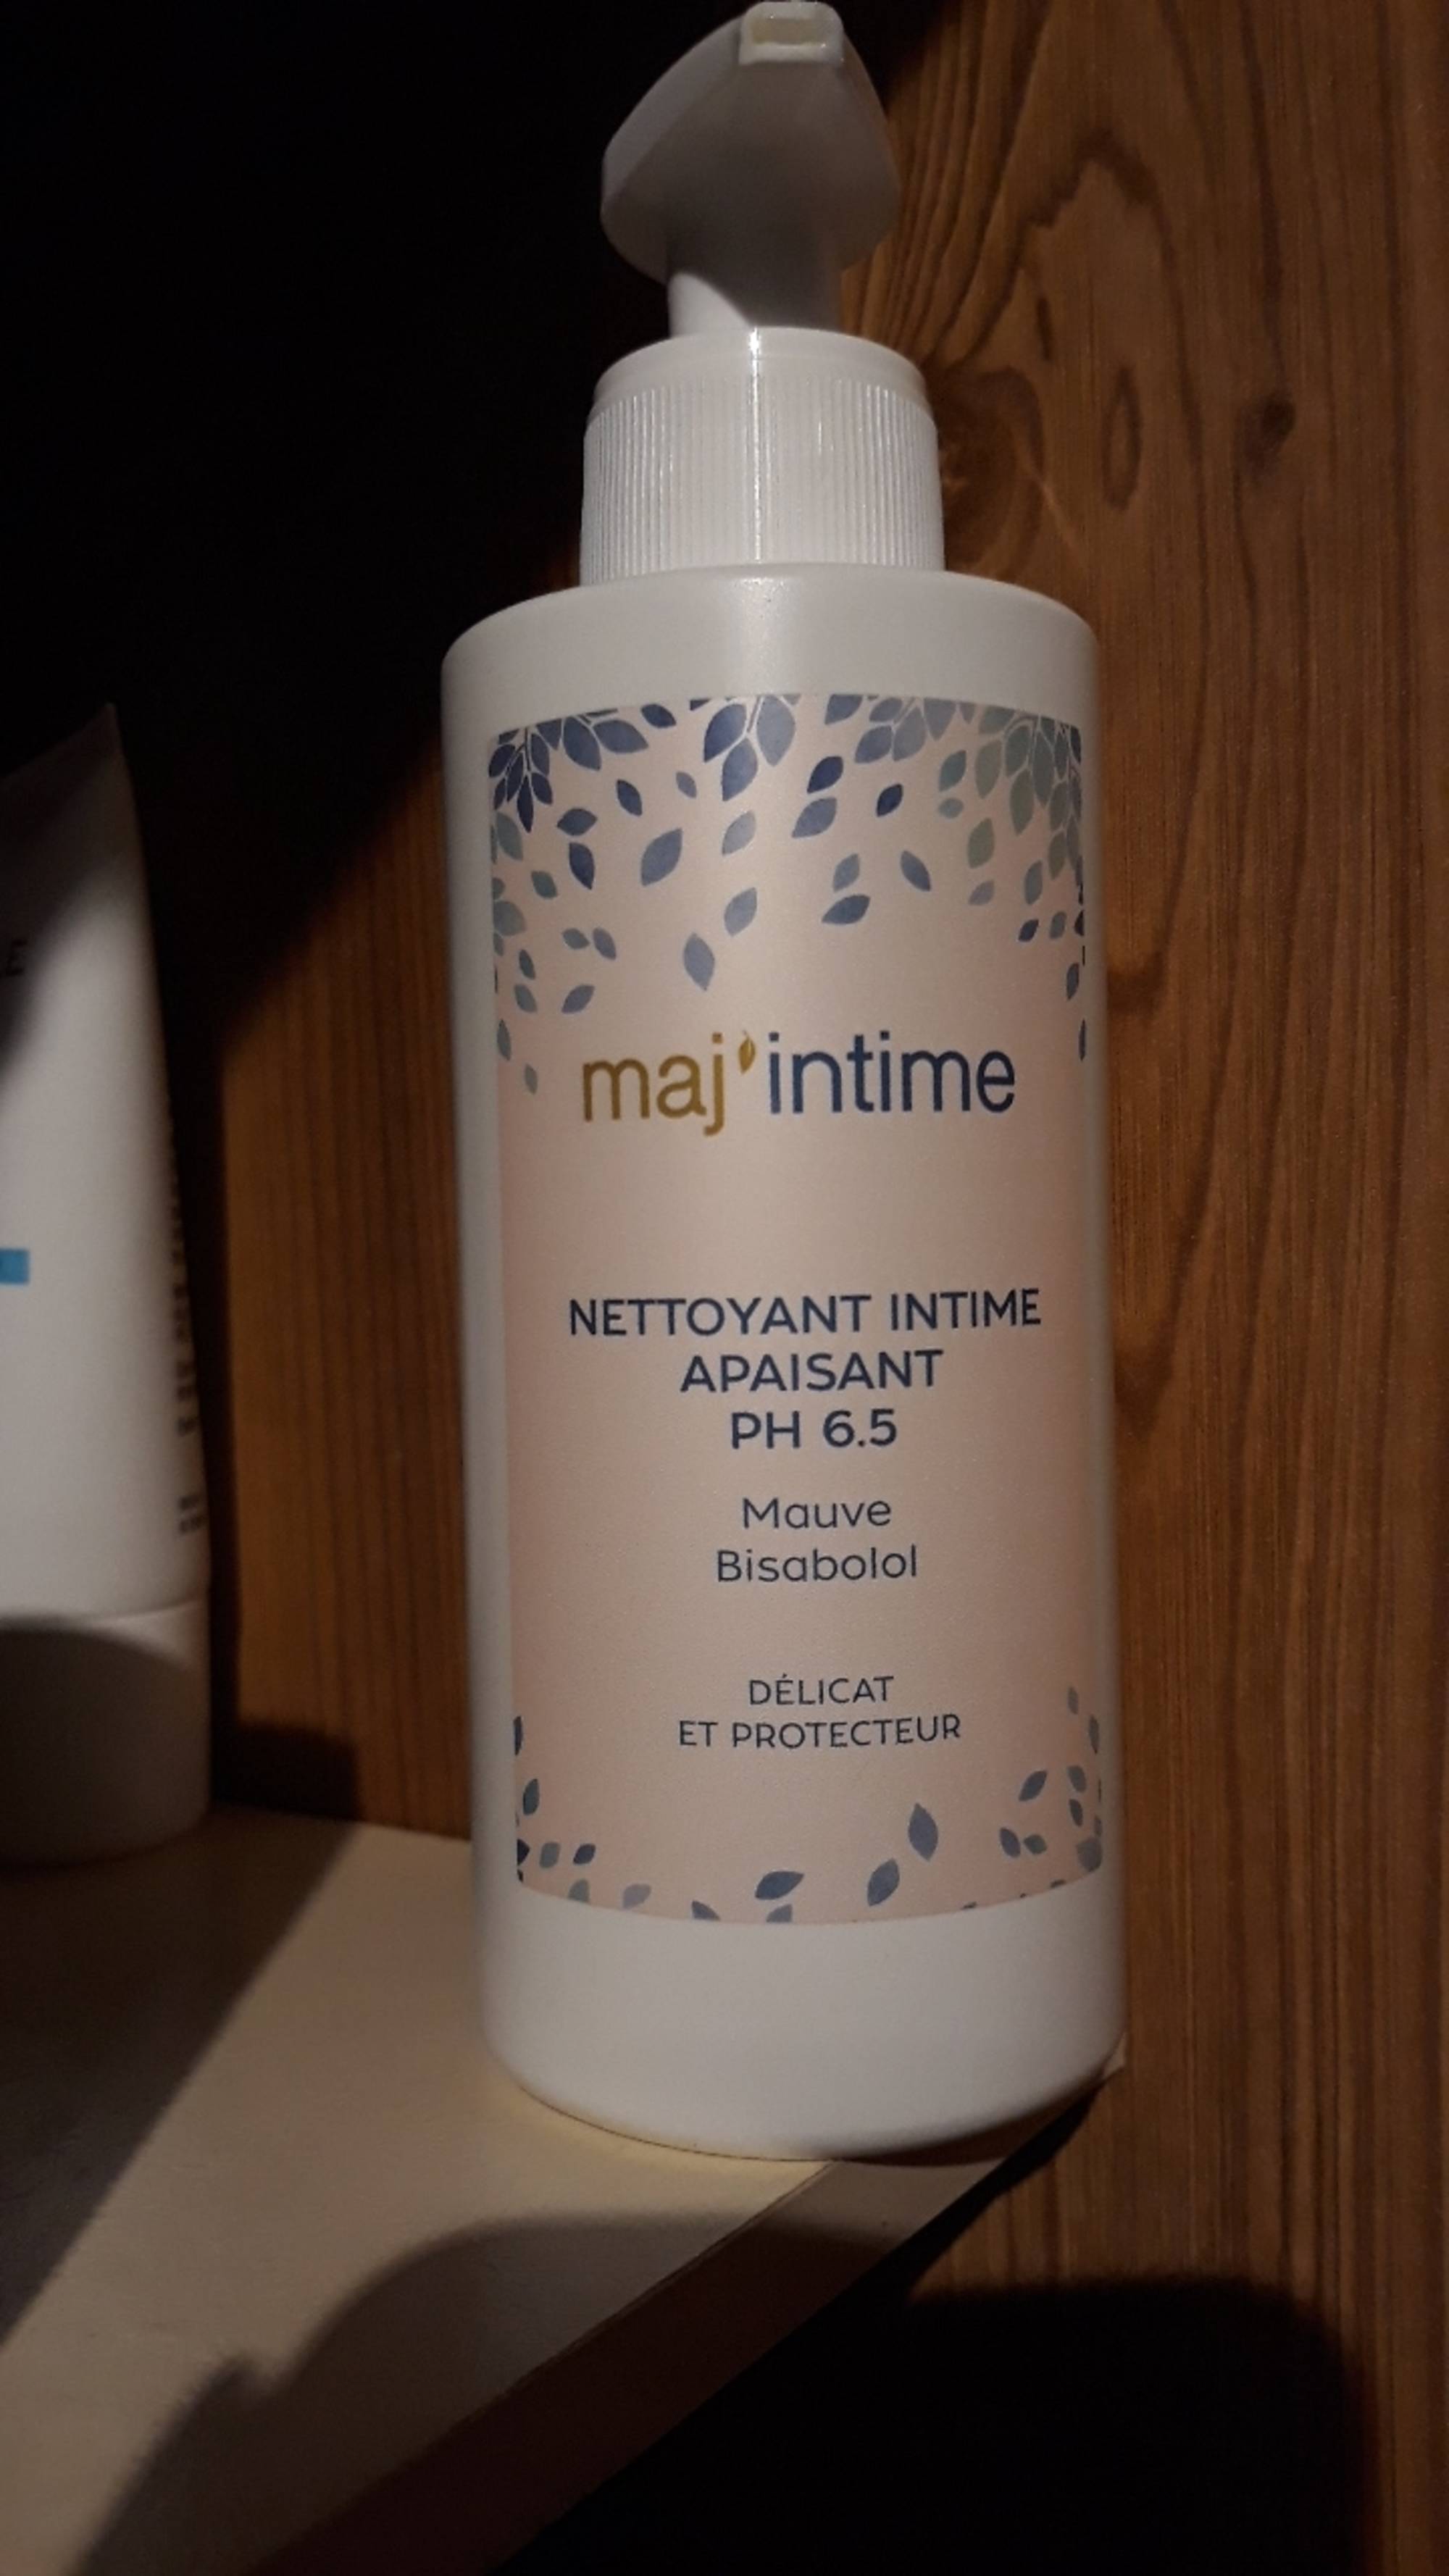 MAJ'INTIME - Nettoyant intime apaisant PH 6.5